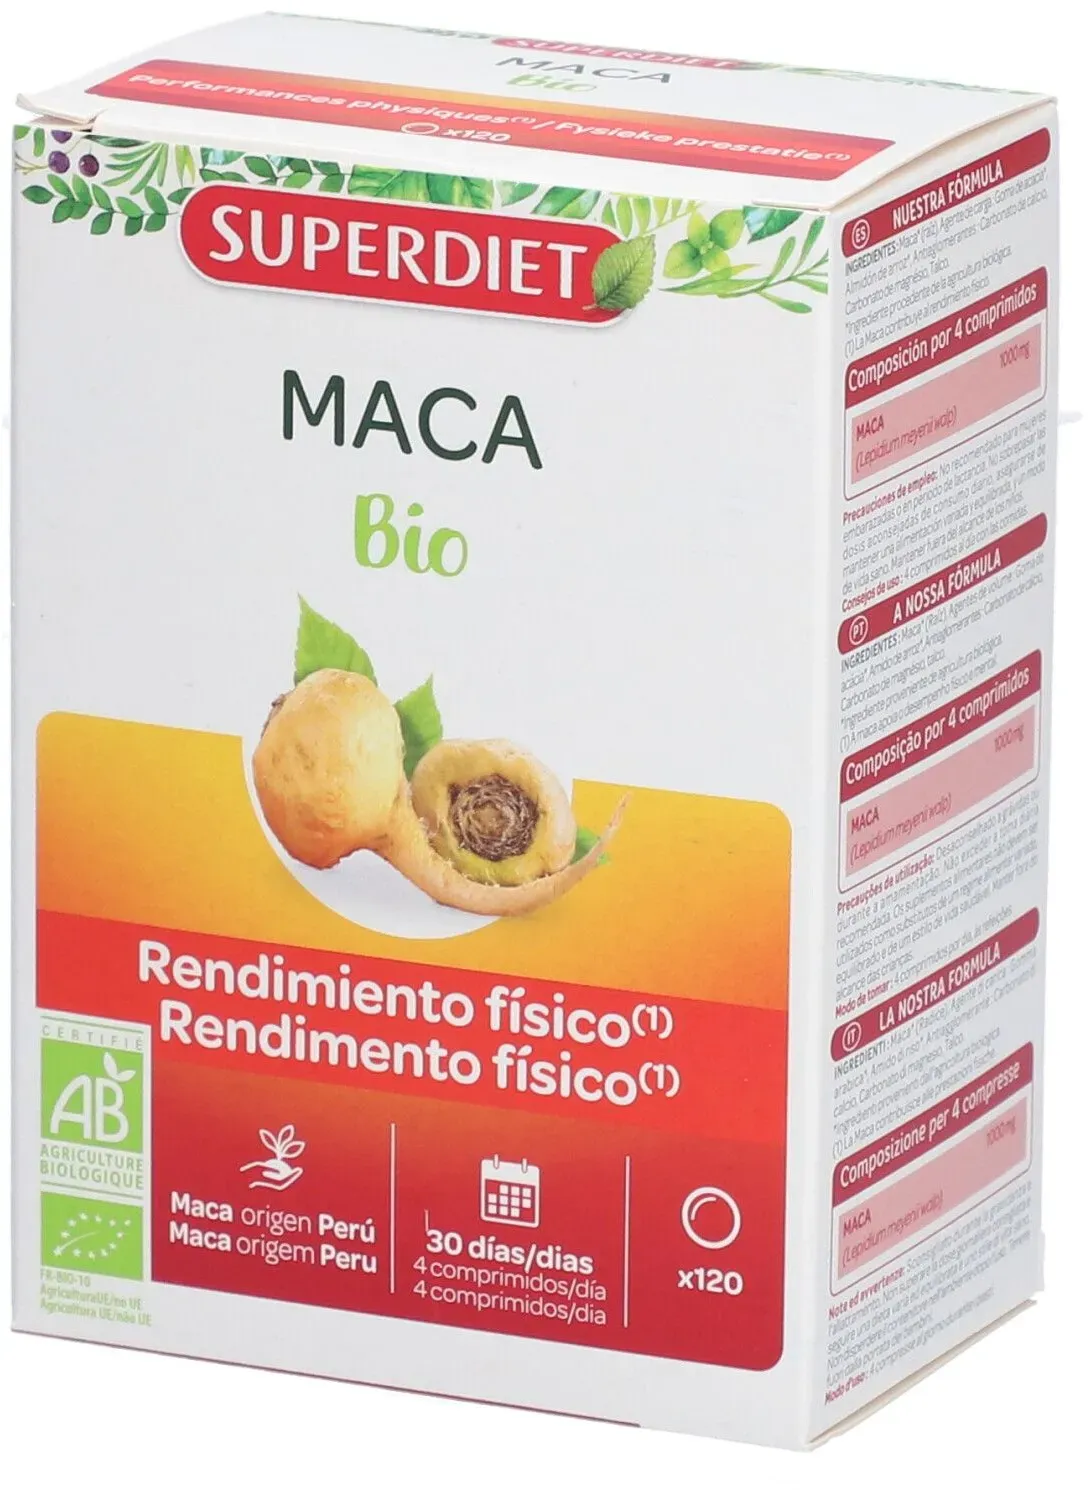 SUPERDIET Maca Bio Performances physiques 120 pc(s) comprimé(s)